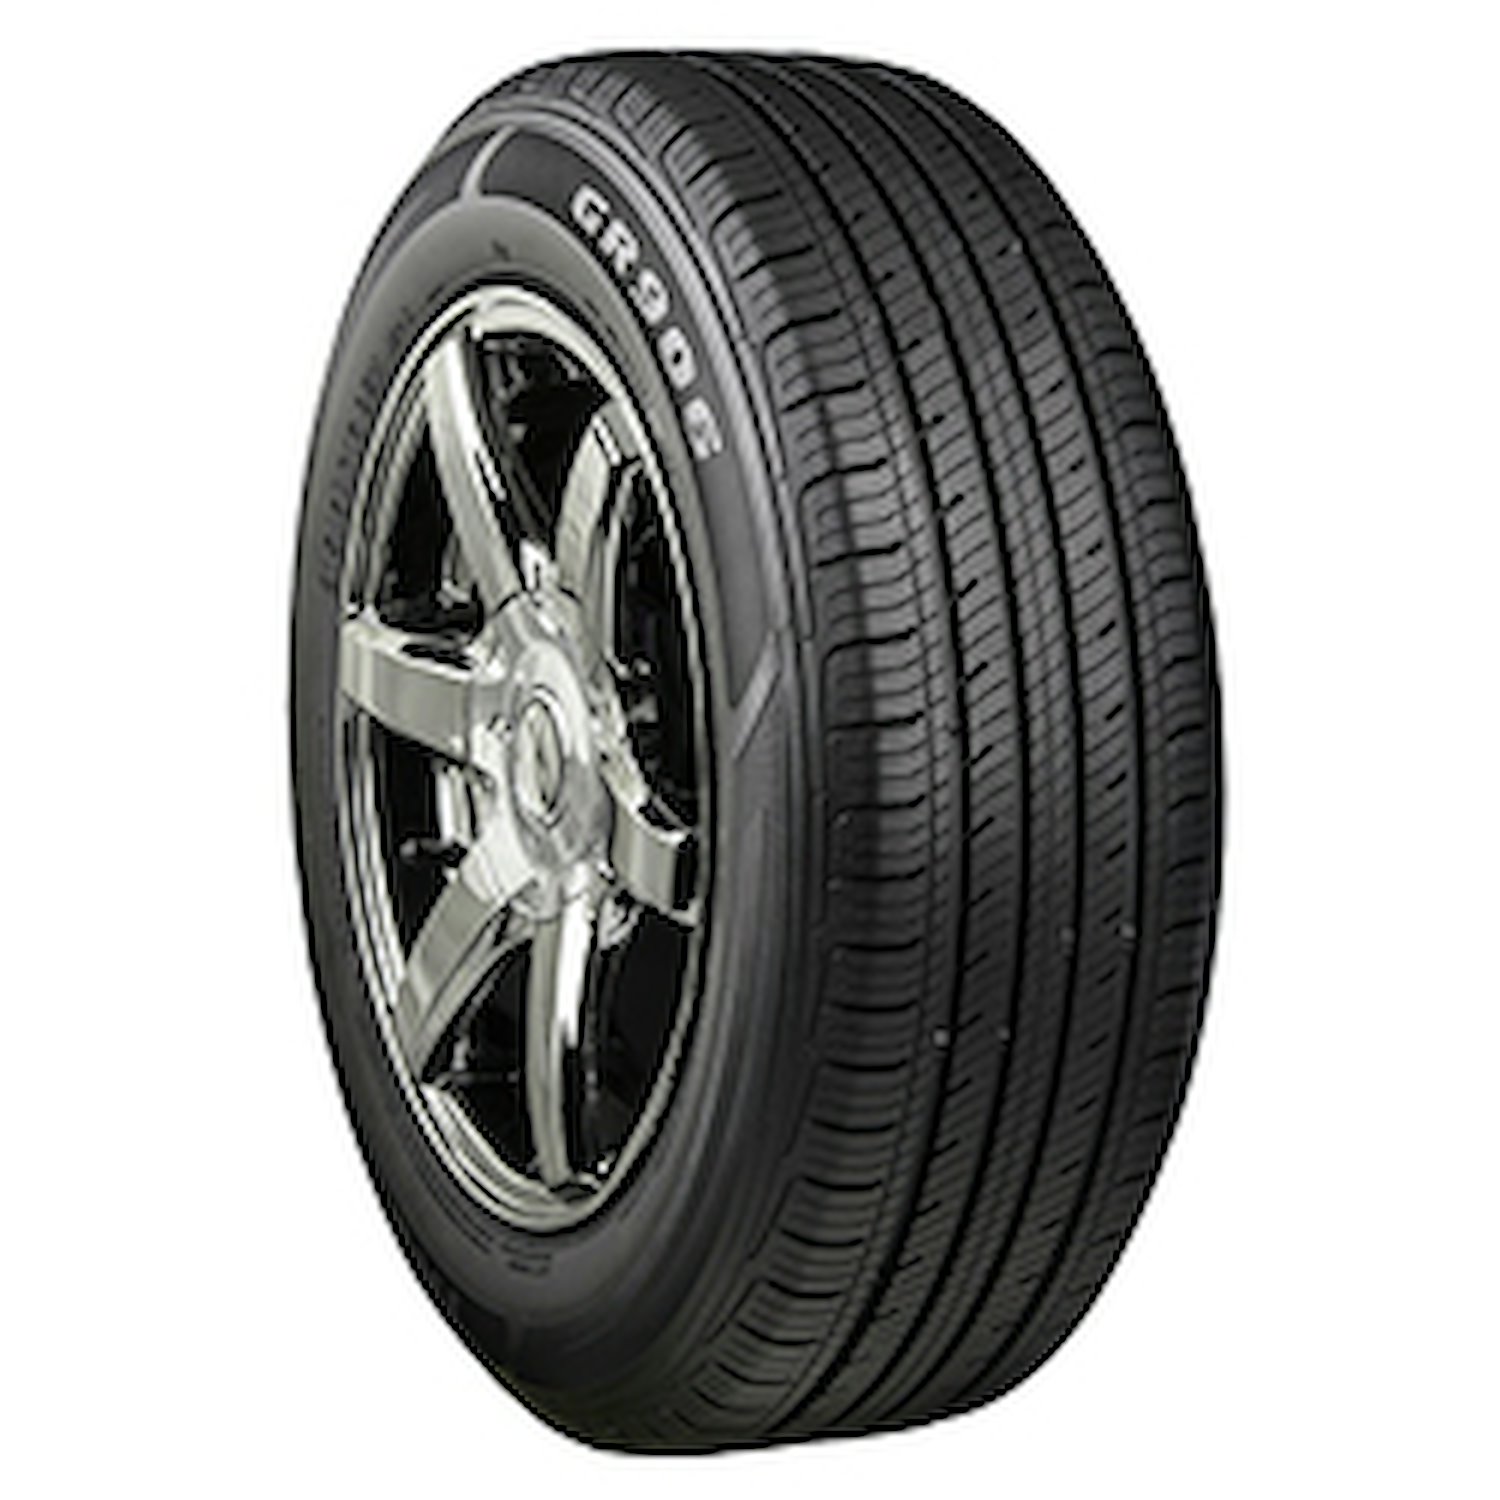 GR906 Tire, 215/55R18 95H